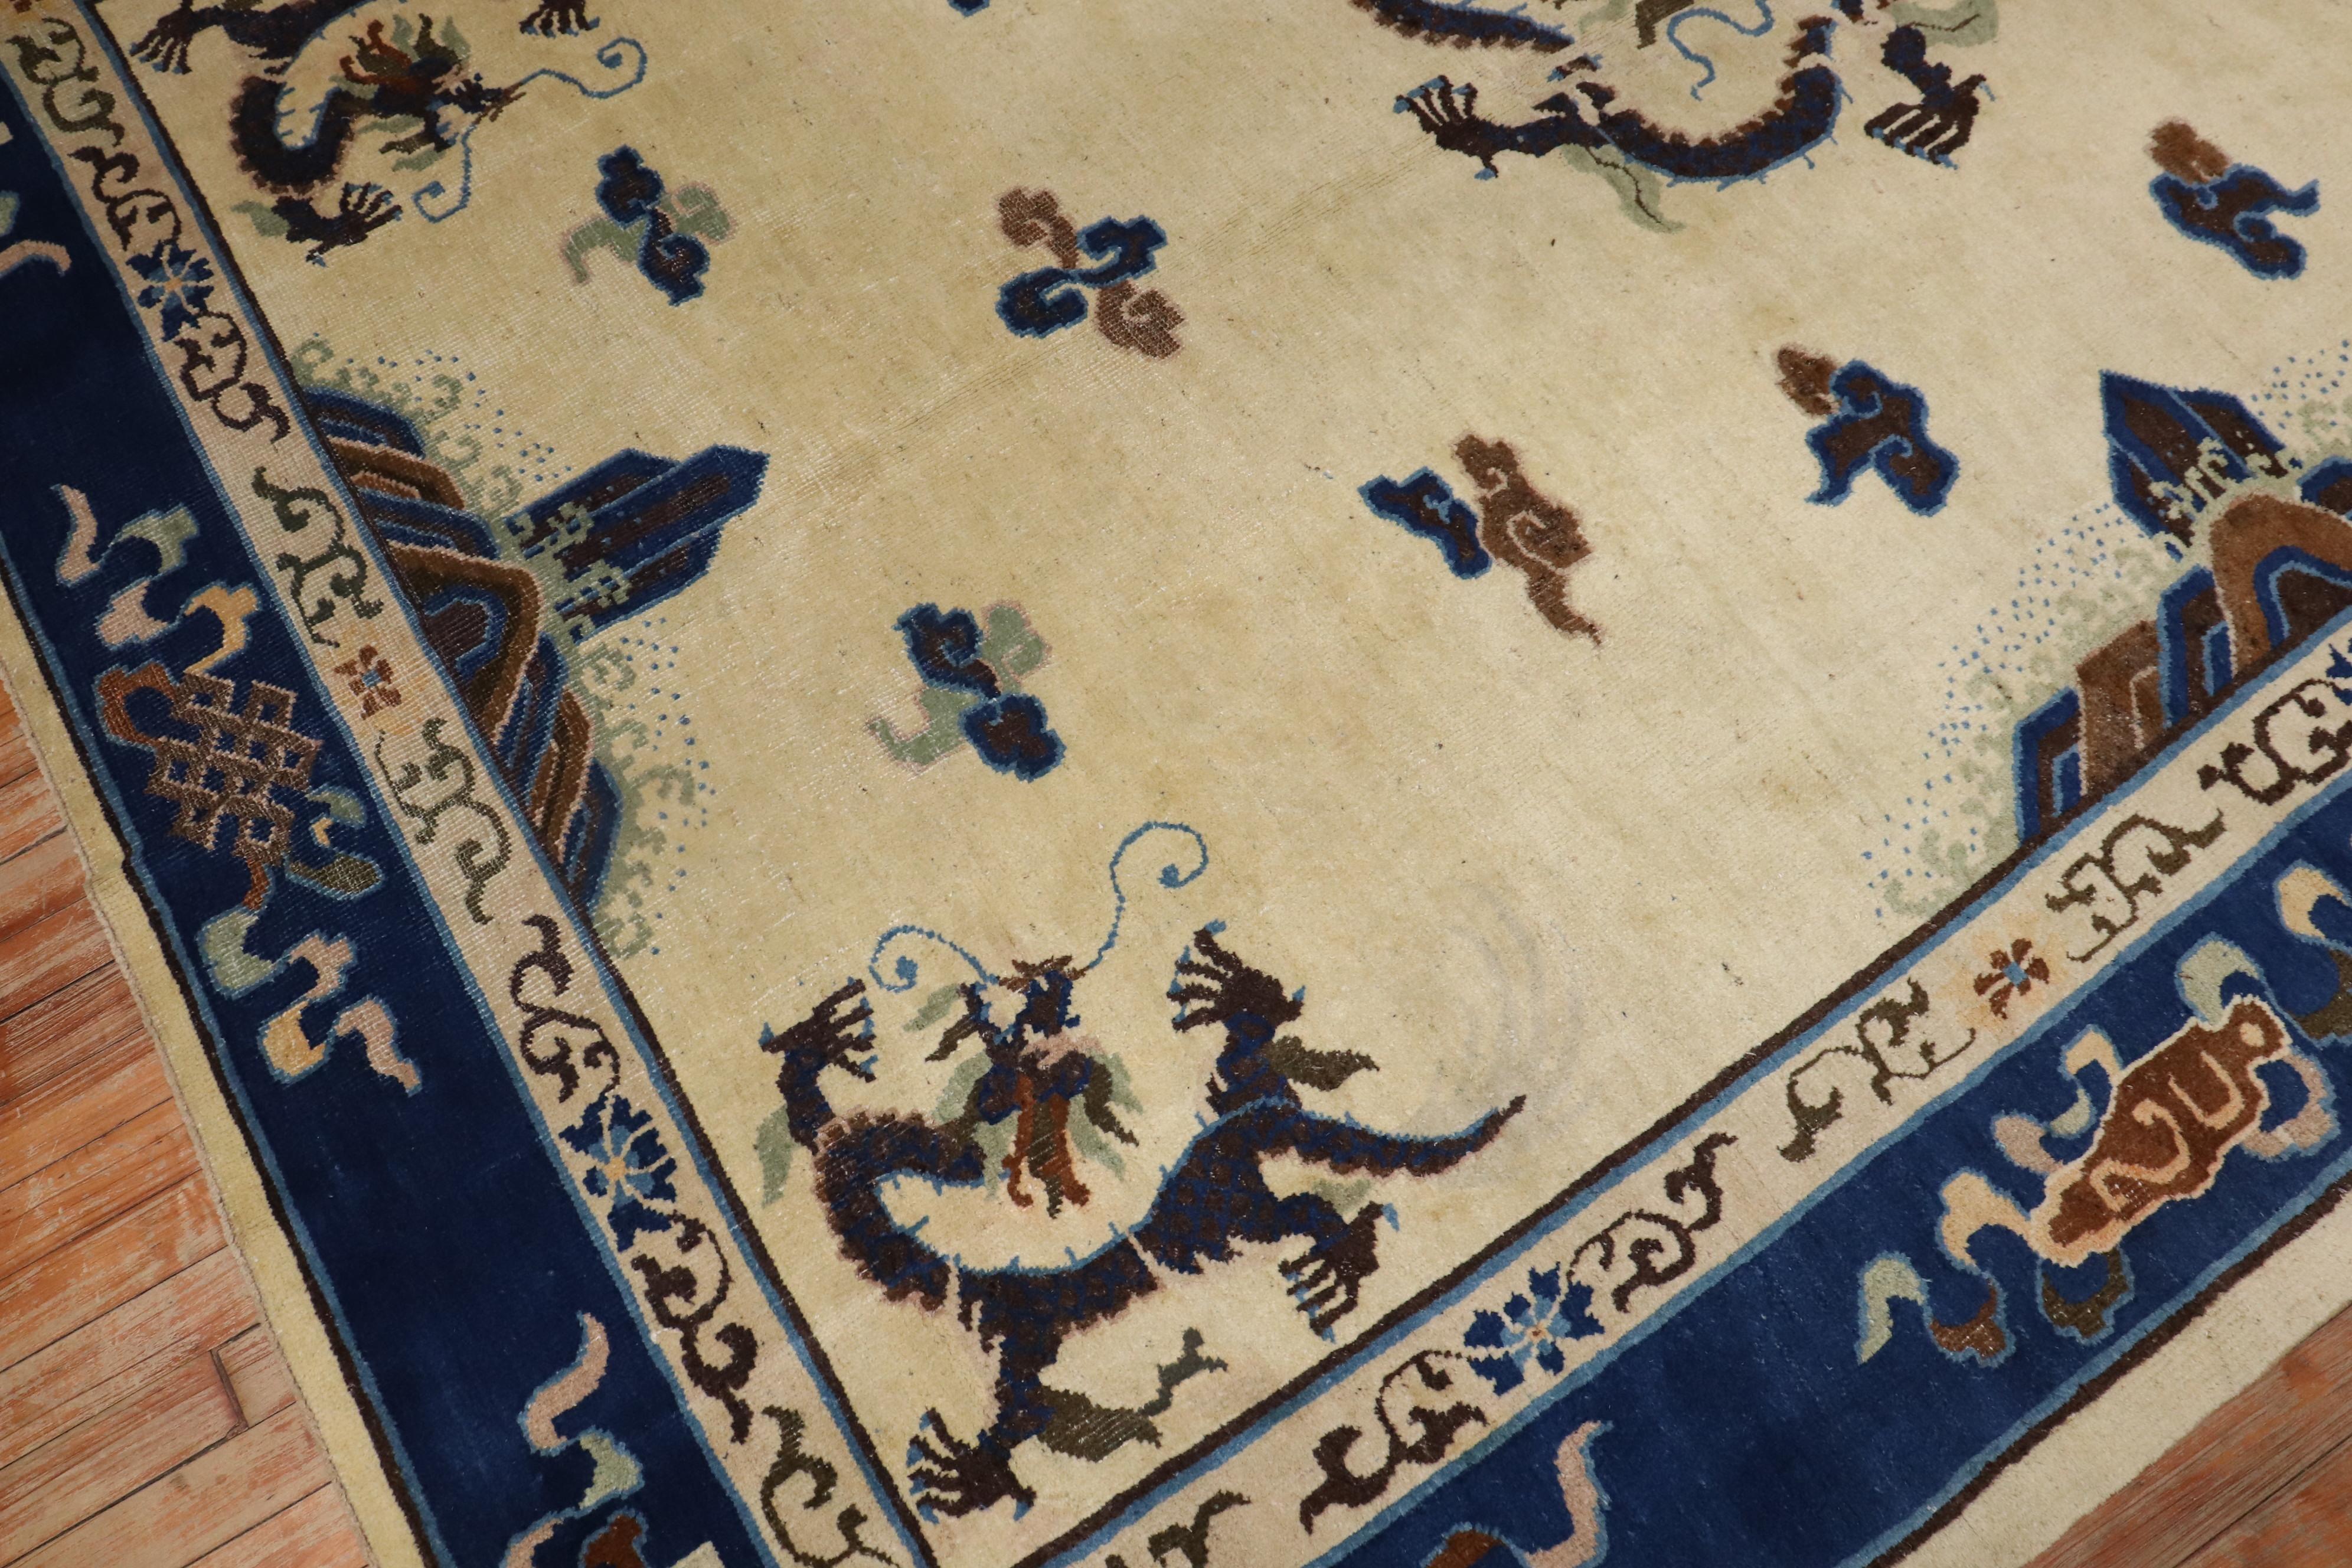 Ein chinesischer Teppich mit Drachenmotiv aus dem frühen 20. Jahrhundert aus Peking mit einem großzügigen offenen Feldmuster auf elfenbeinfarbenem Grund

Maße: 7'3'' x 9'7''

Chinesische Drachen sind ein wichtiges und mächtiges Symbol in der